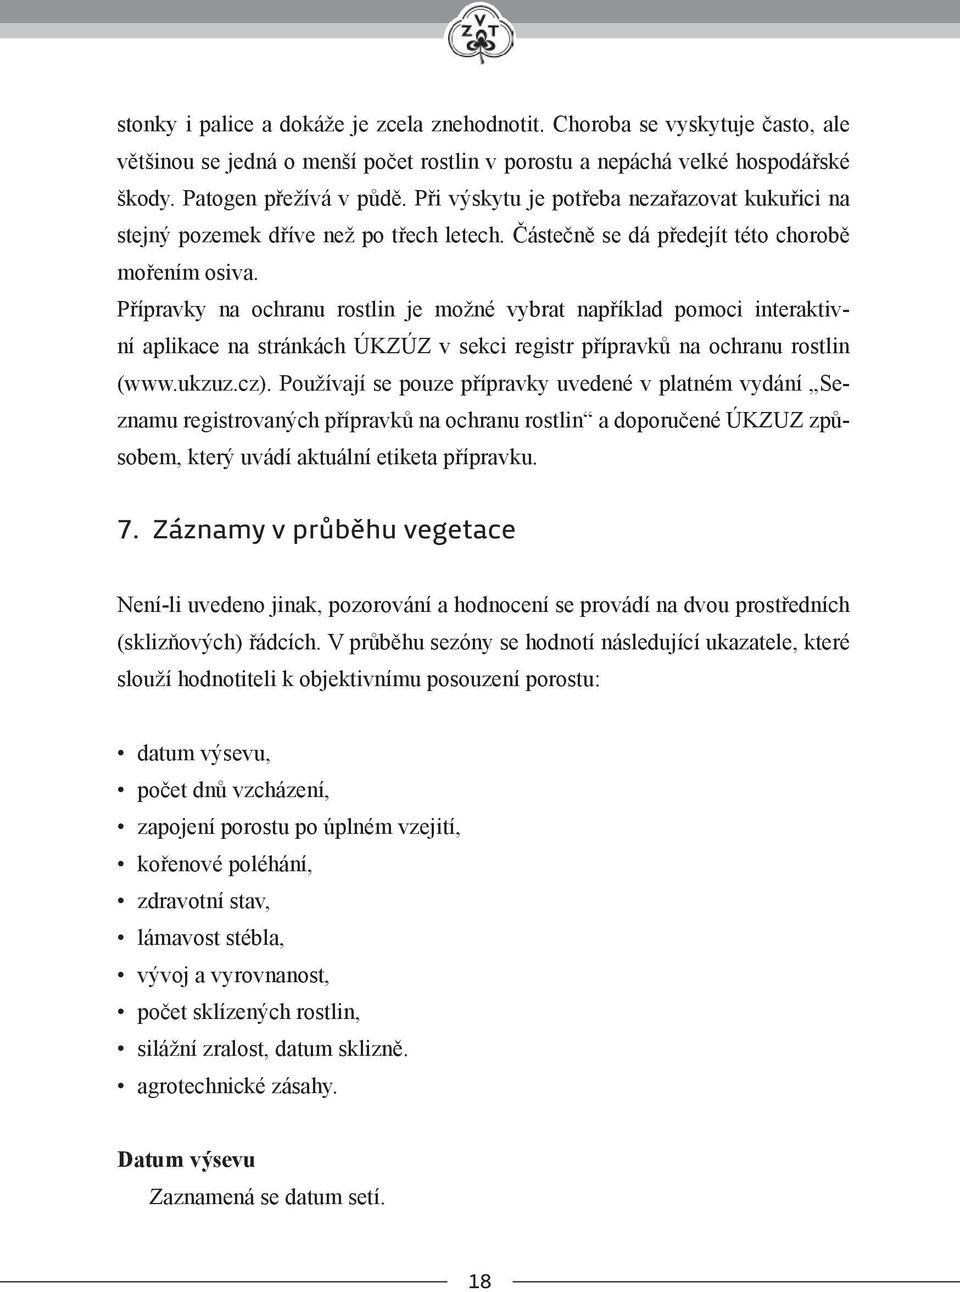 Přípravky na ochranu rostlin je možné vybrat například pomoci interaktivní aplikace na stránkách ÚKZÚZ v sekci registr přípravků na ochranu rostlin (www.ukzuz.cz).